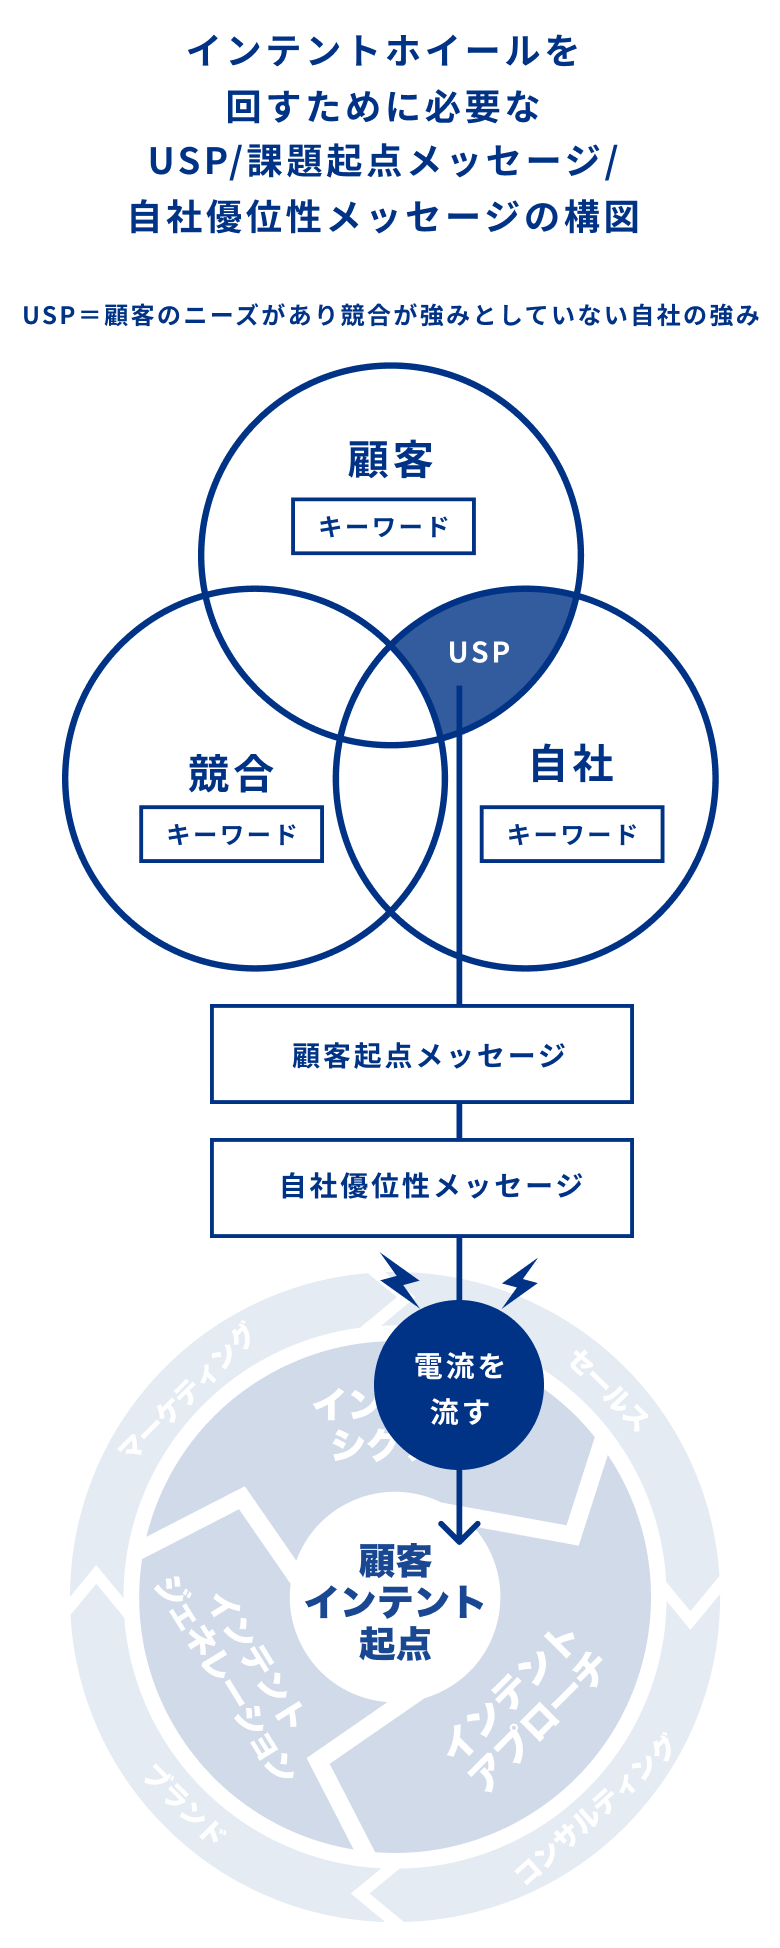 インテントホイールを回すために必要なUSP/顧客課題起点メッセージ/自社優位性メッセージの構図